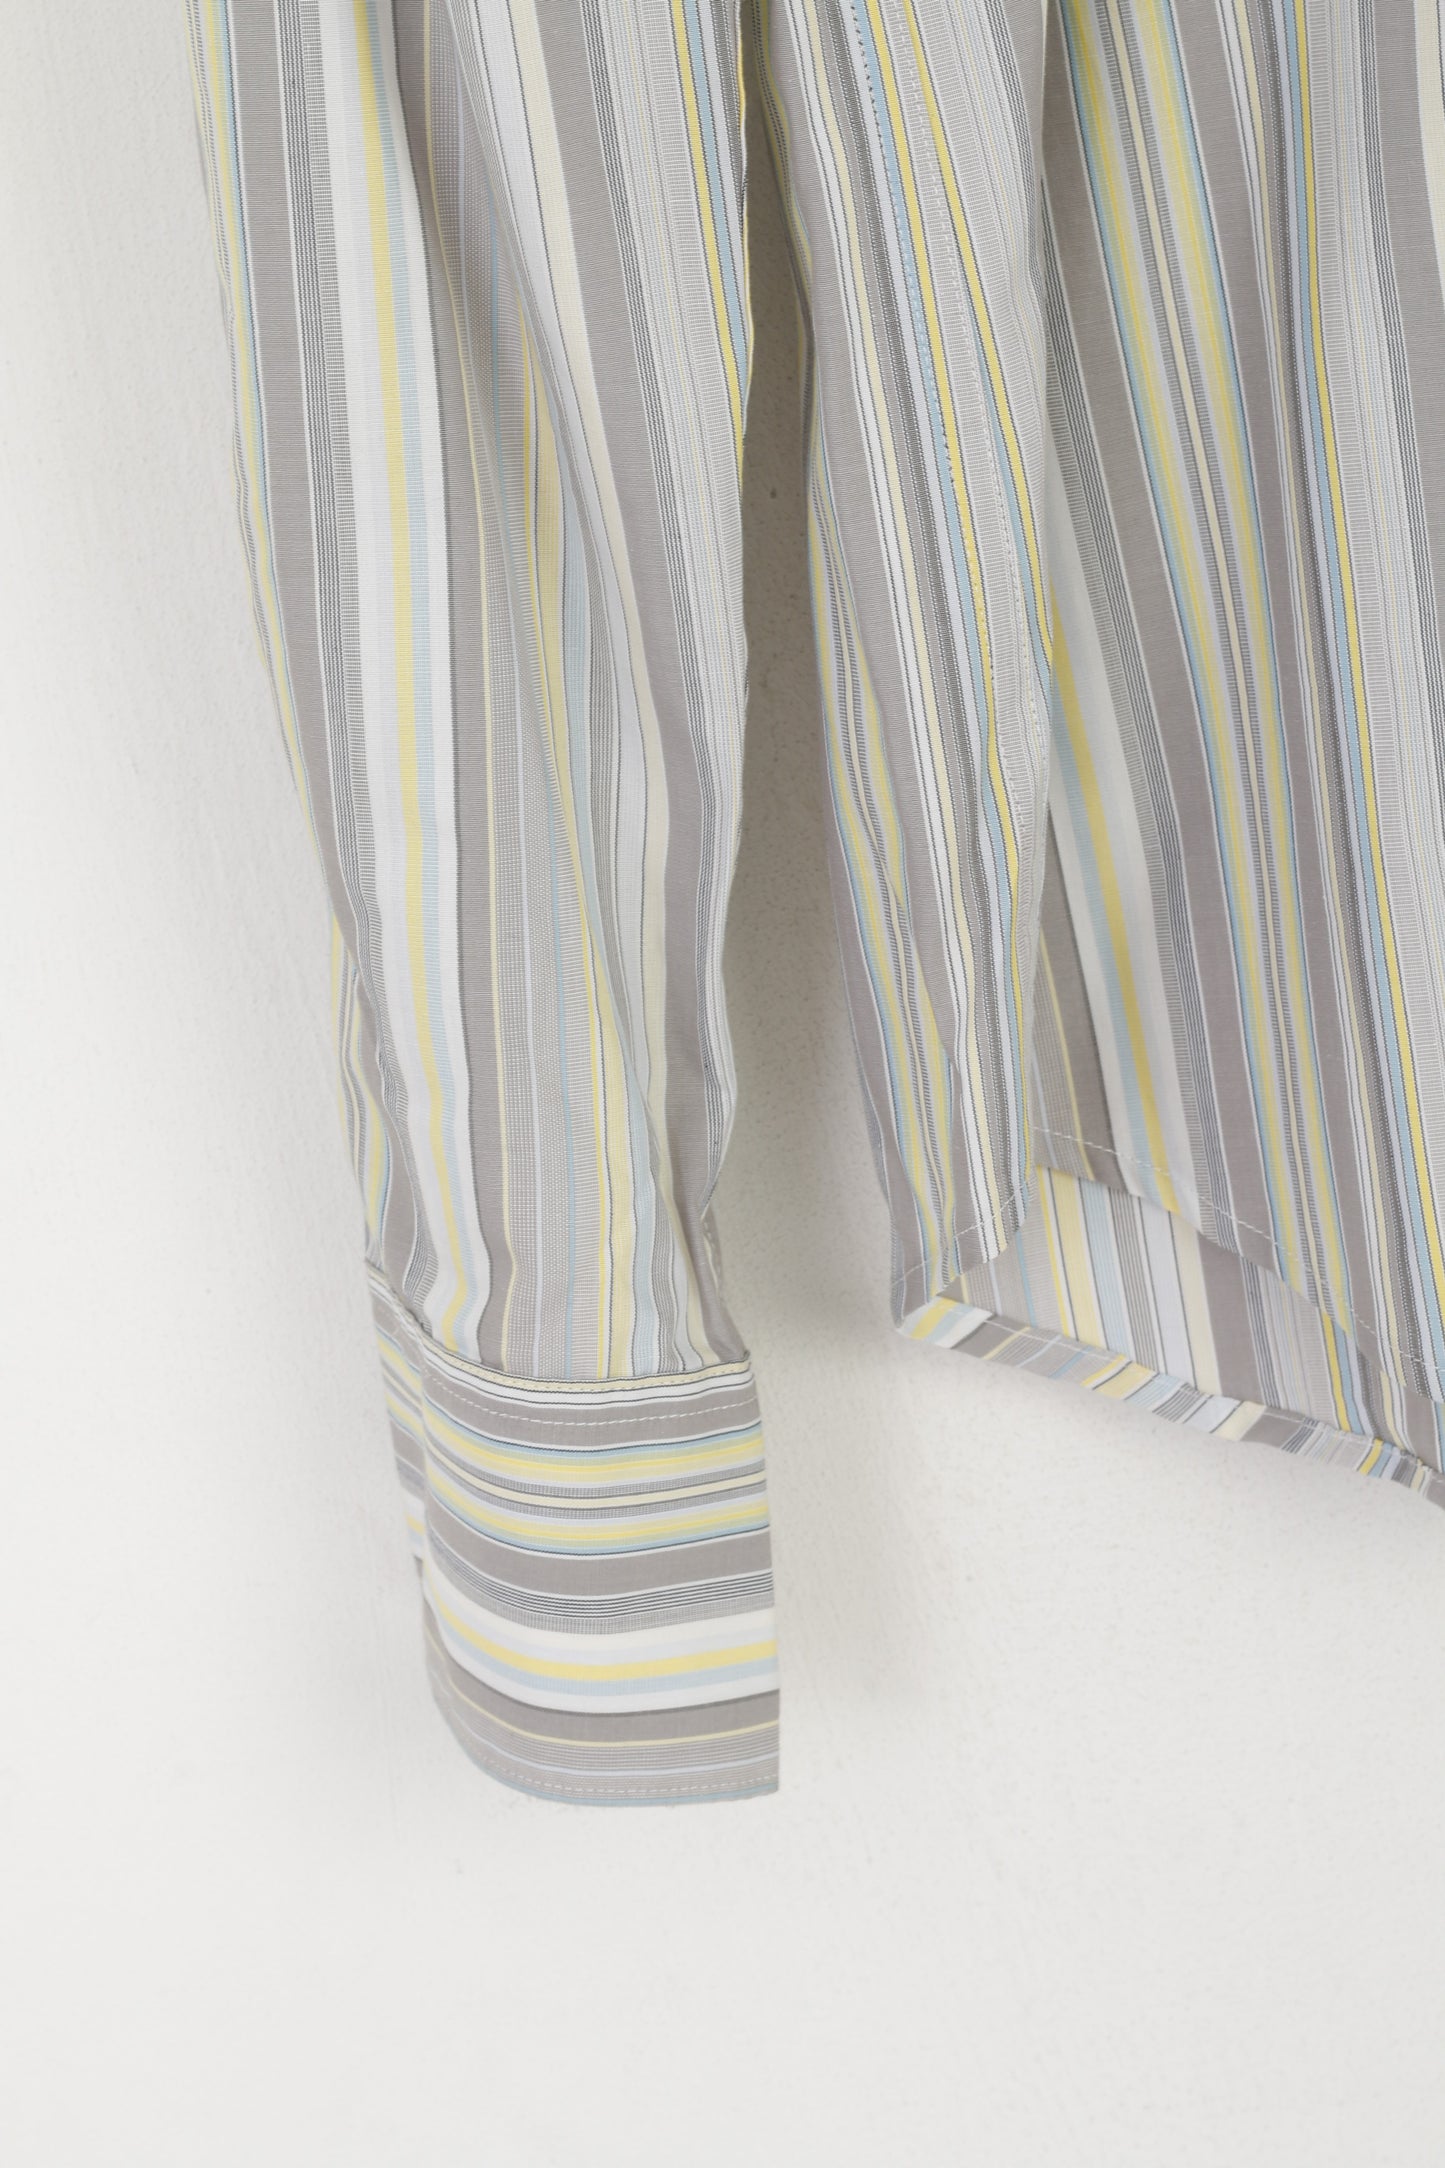 Nuova camicia casual da uomo Ben Sherman S in cotone a righe grigie a maniche lunghe slim fit